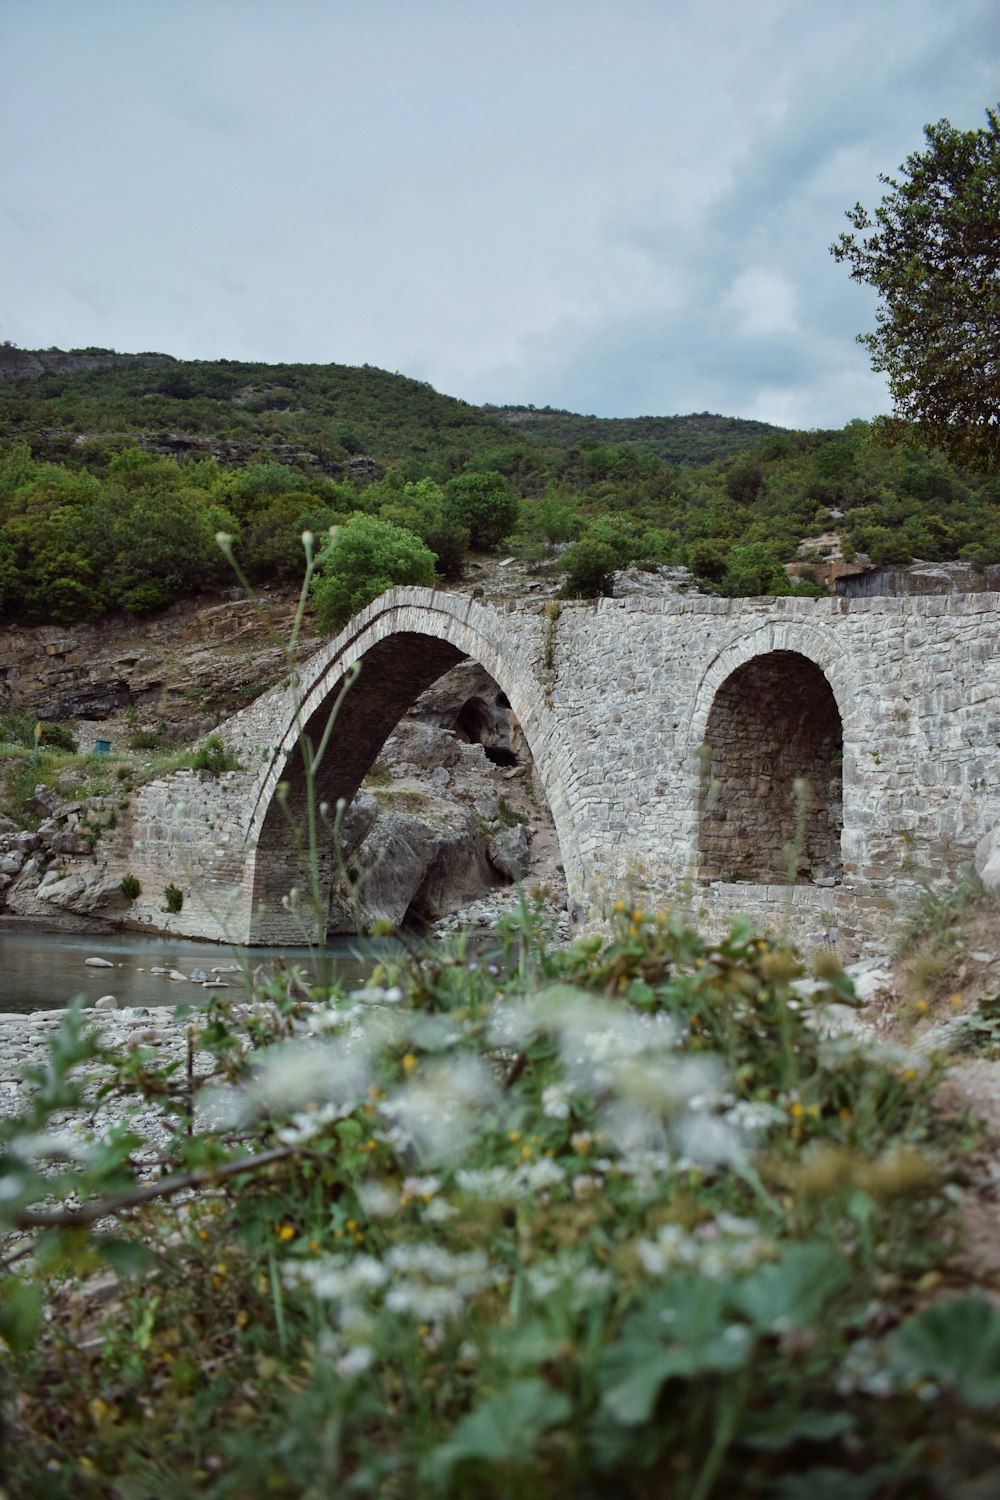 a stone bridge over a small river